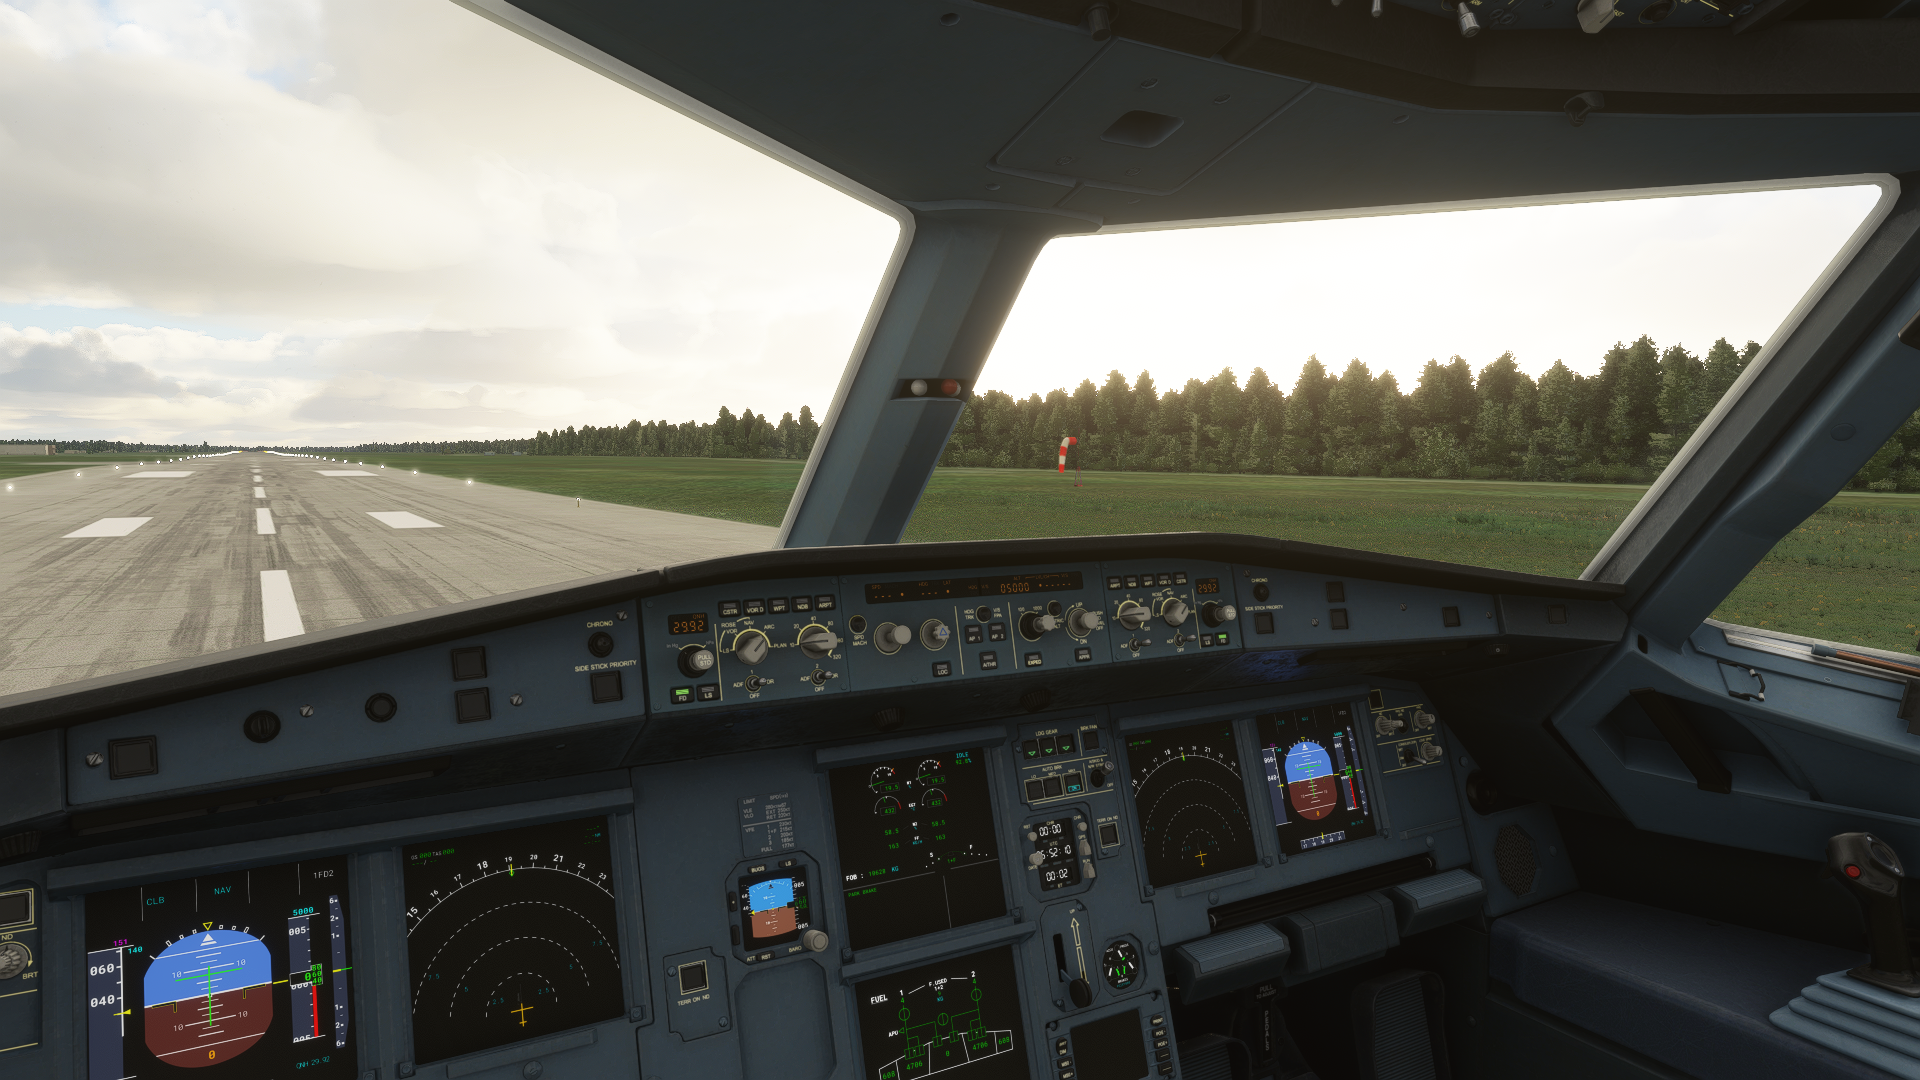 General 1920x1080 Microsoft Flight Simulator 2020 Airbus A320 cockpit aircraft PC gaming screen shot vehicle passenger aircraft vehicle interiors